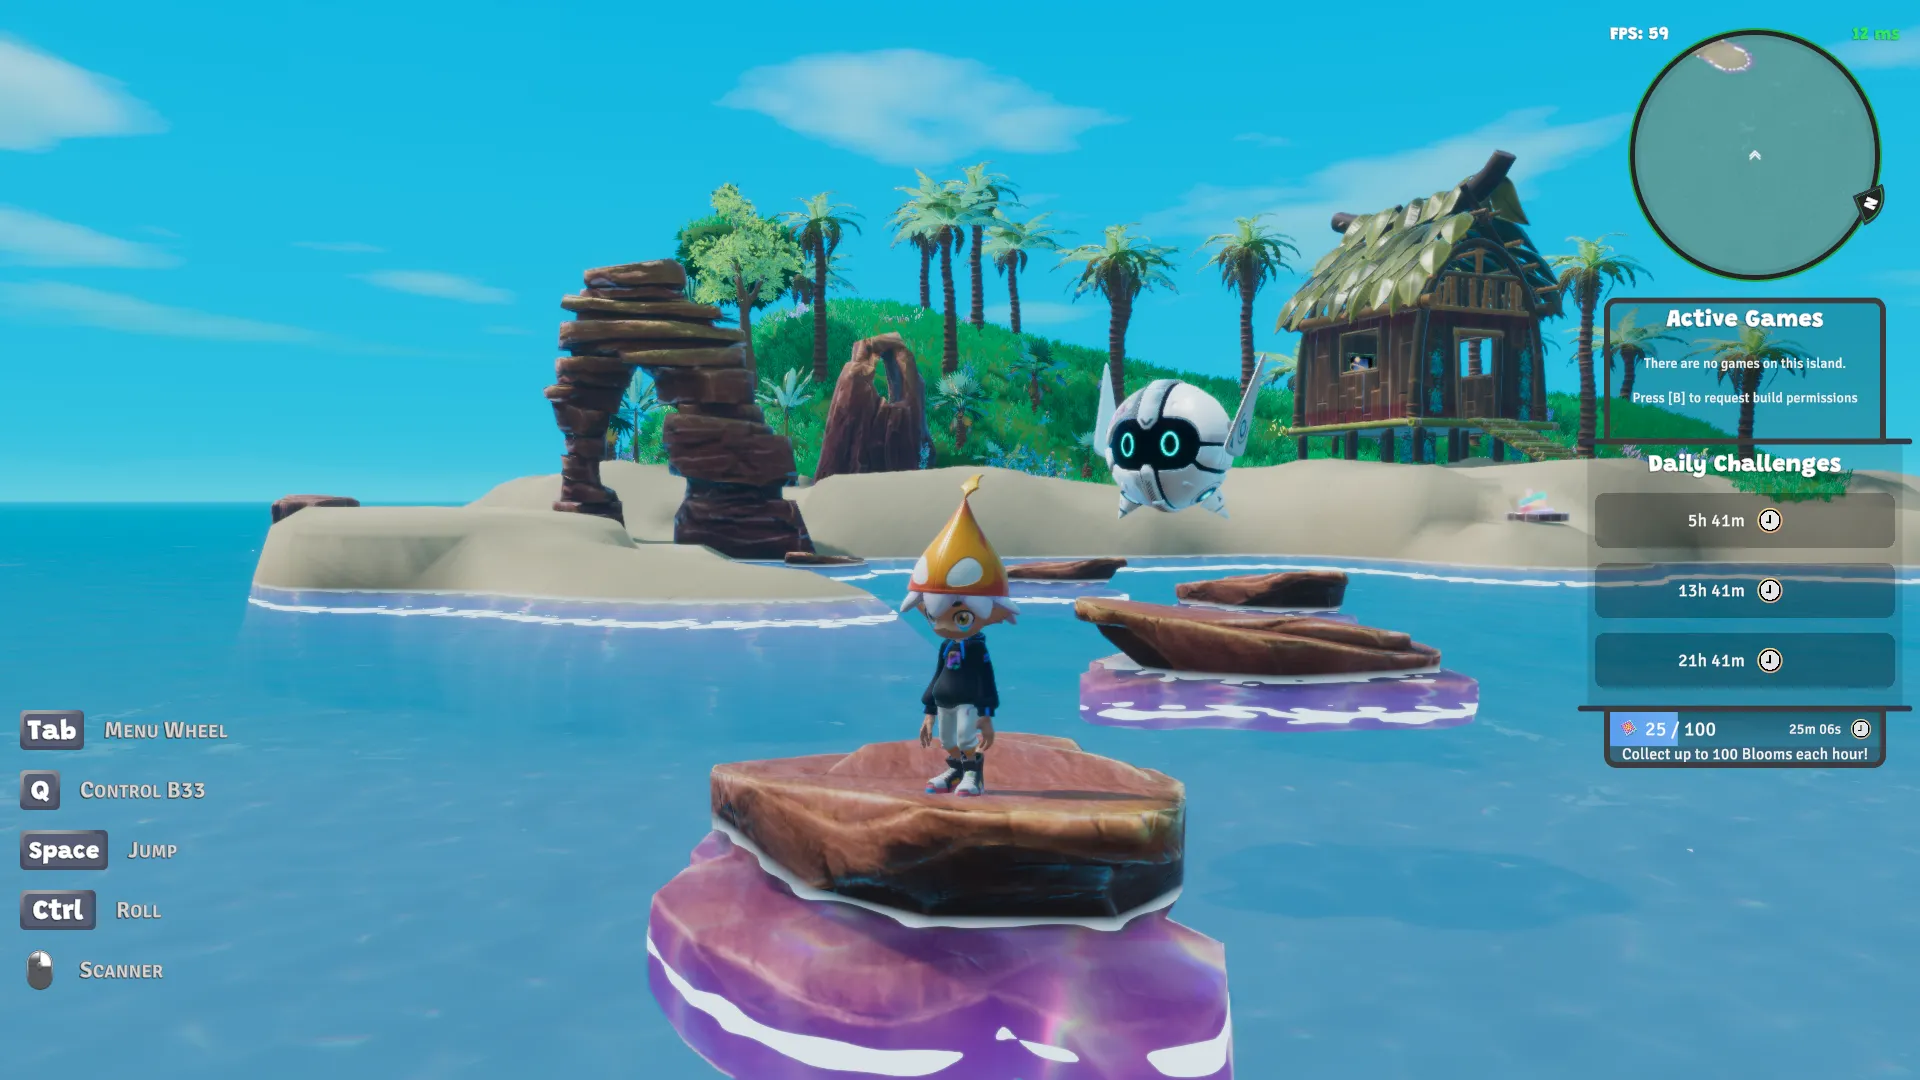 アーチ岩層と水中に飛び石がある 3D レンダリングされた島を示すニフティ島のスクリーンショット。帽子をかぶった小さなキャラクターと浮遊ロボットが岩の上に立っています。